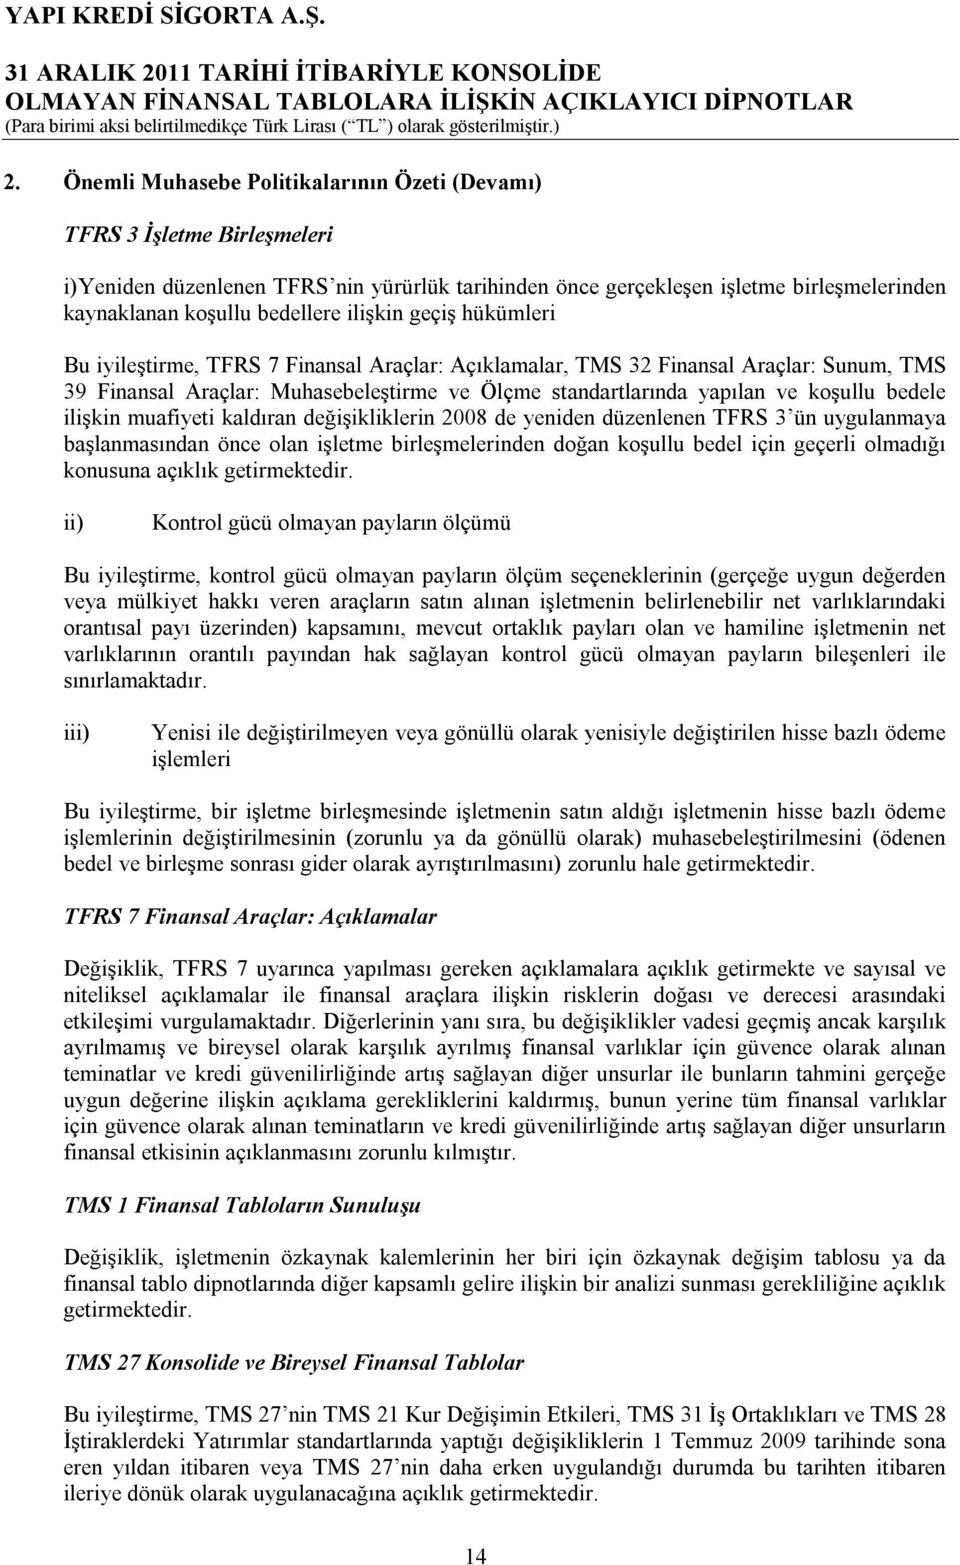 koşullu bedele ilişkin muafiyeti kaldıran değişikliklerin 2008 de yeniden düzenlenen TFRS 3 ün uygulanmaya başlanmasından önce olan işletme birleşmelerinden doğan koşullu bedel için geçerli olmadığı